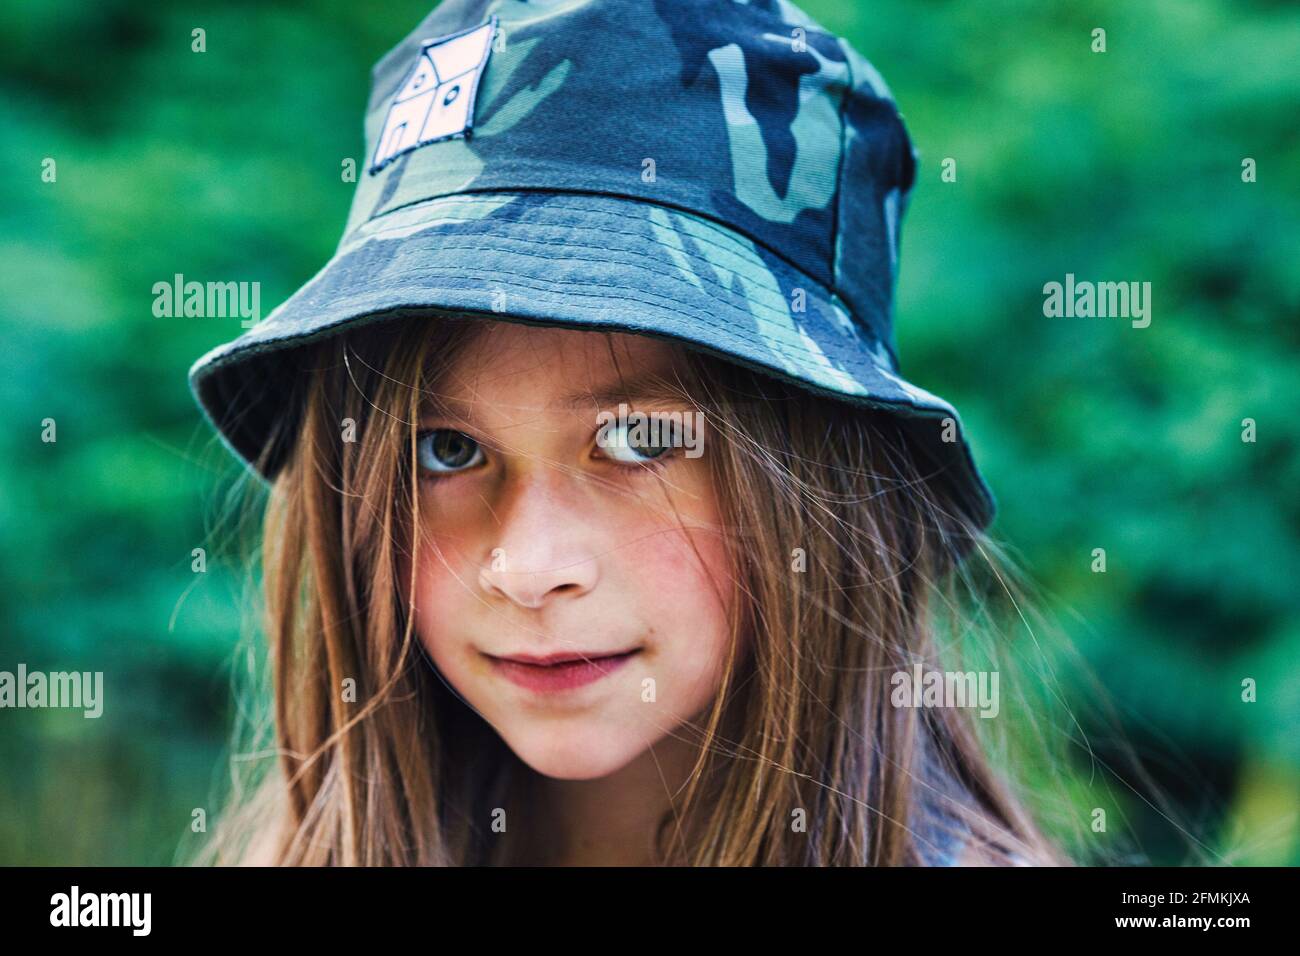 Retrato de una chica de moda que lleva un sombrero de cubo. Foto de stock